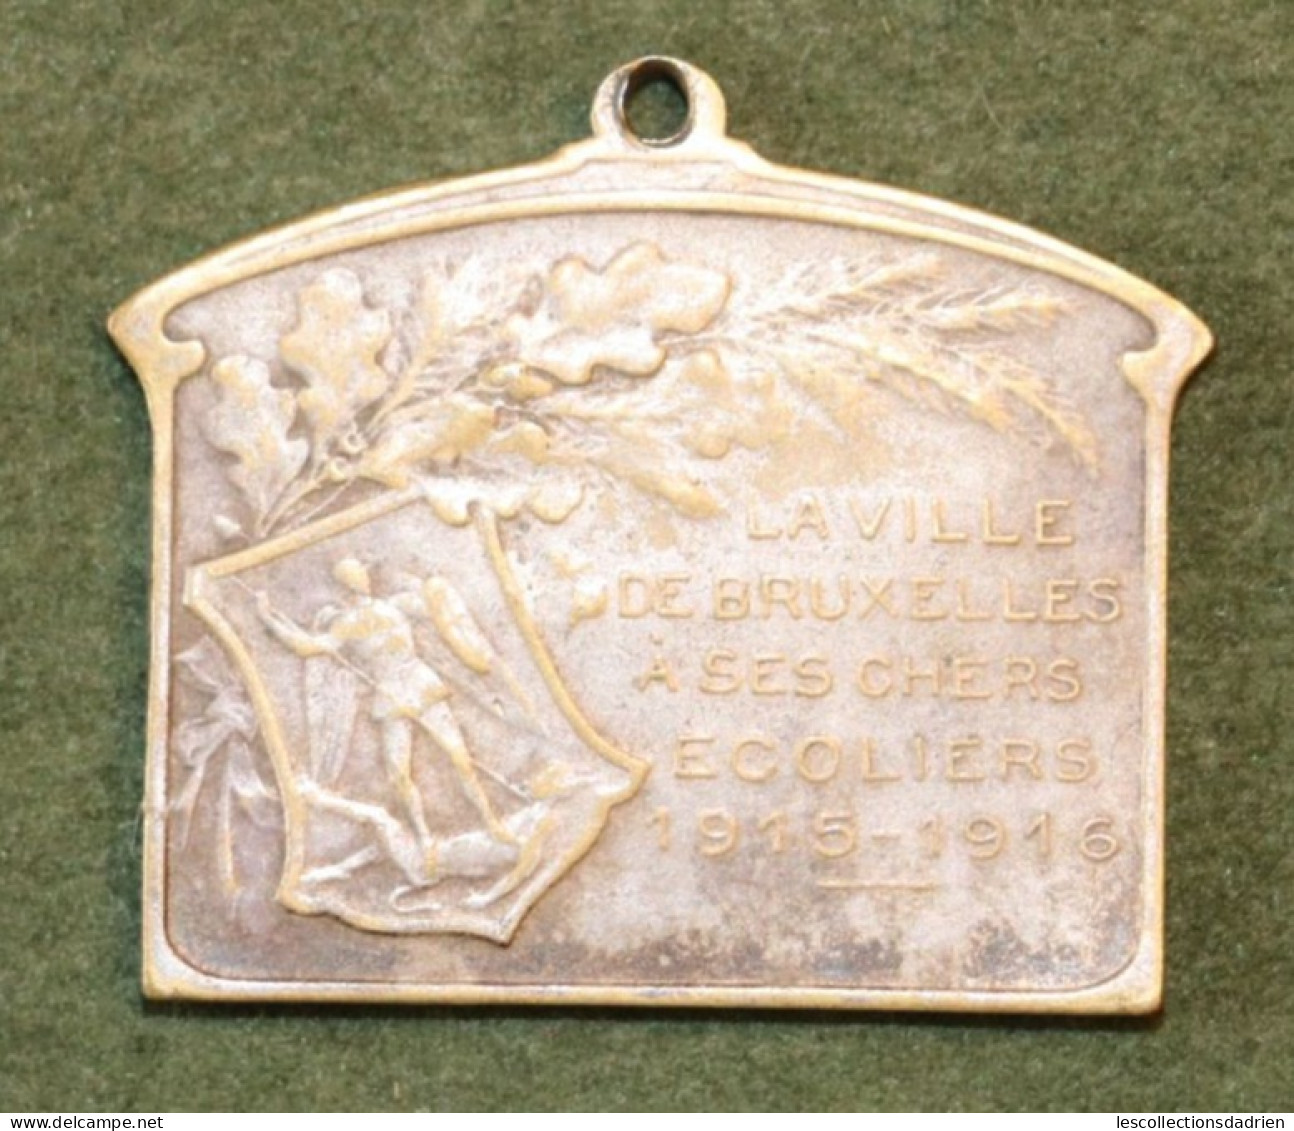 Médaille Belge Bruxelles à Ses écoliers 1915-1916 Guerre 14-18  - Belgian Medal WWI Médaillette Journée Devreese - Belgium